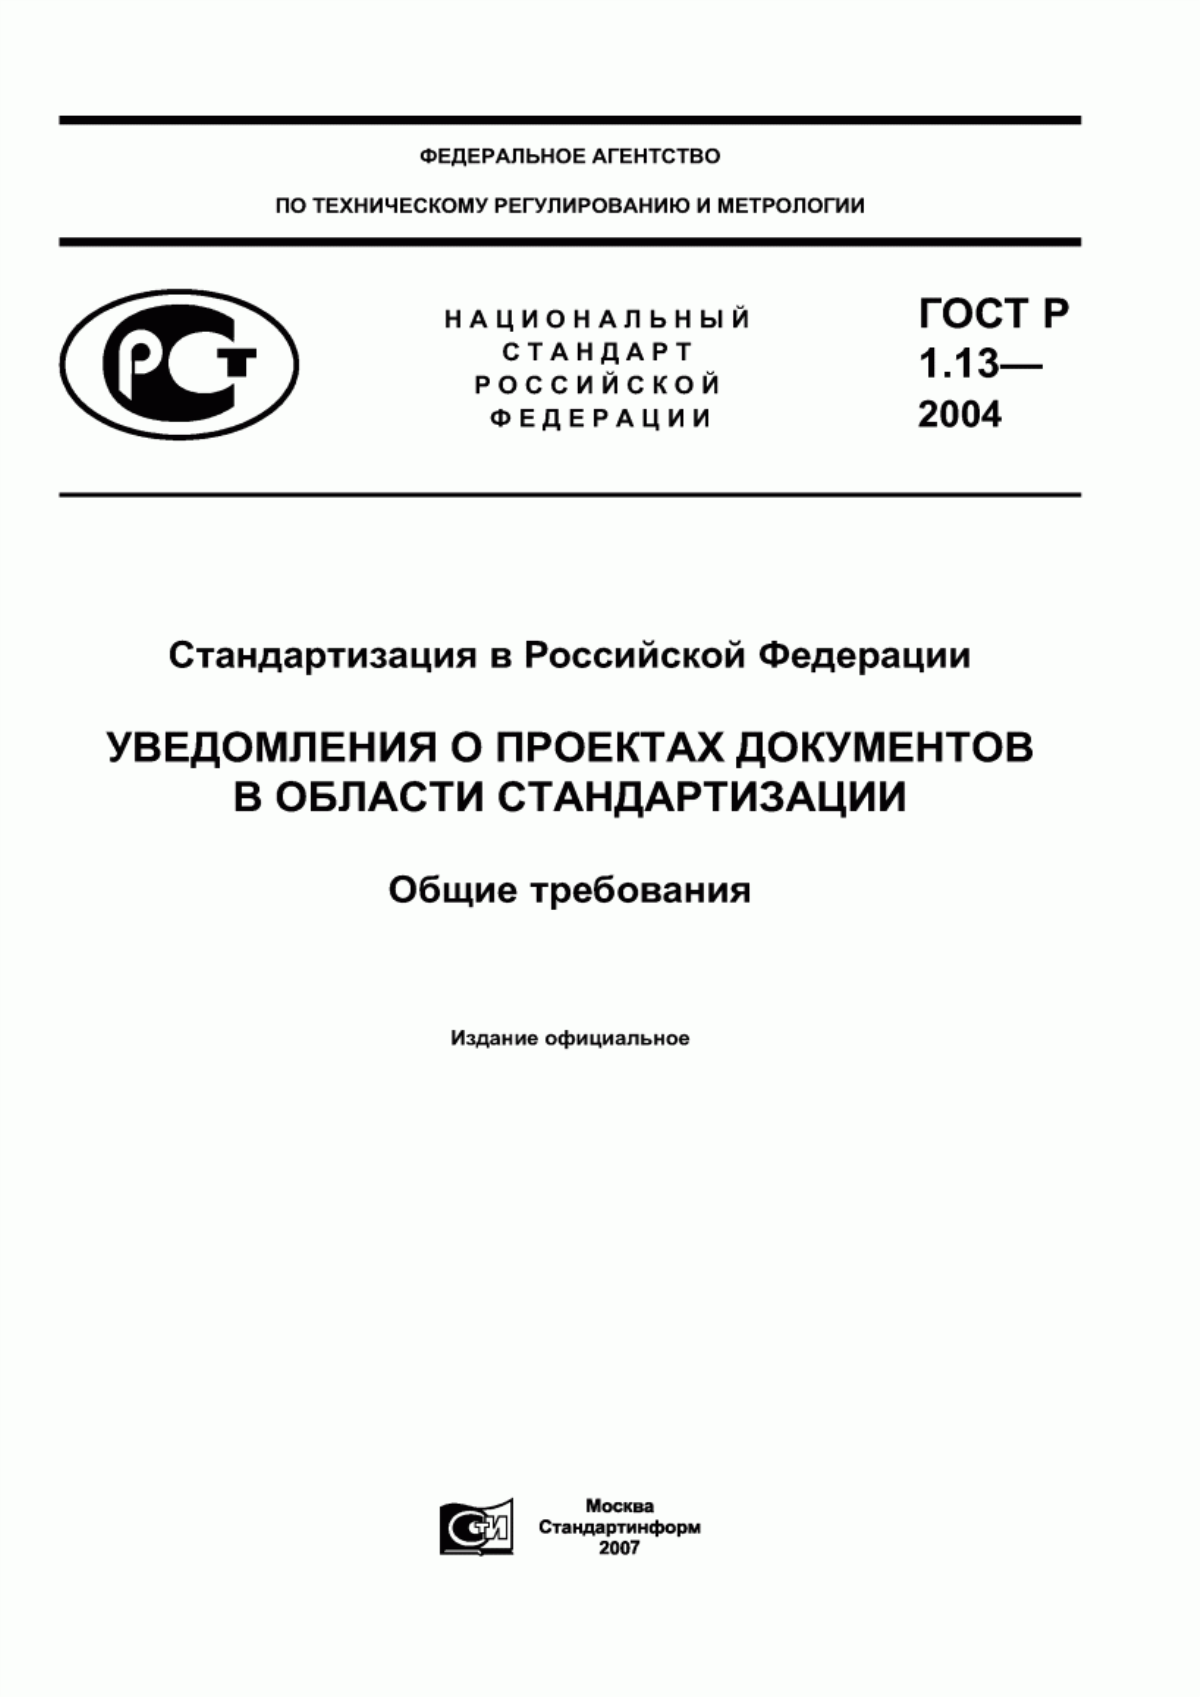 ГОСТ Р 1.13-2004 Стандартизация в Российской Федерации. Уведомления о проектах документов в области стандартизации. Общие требования